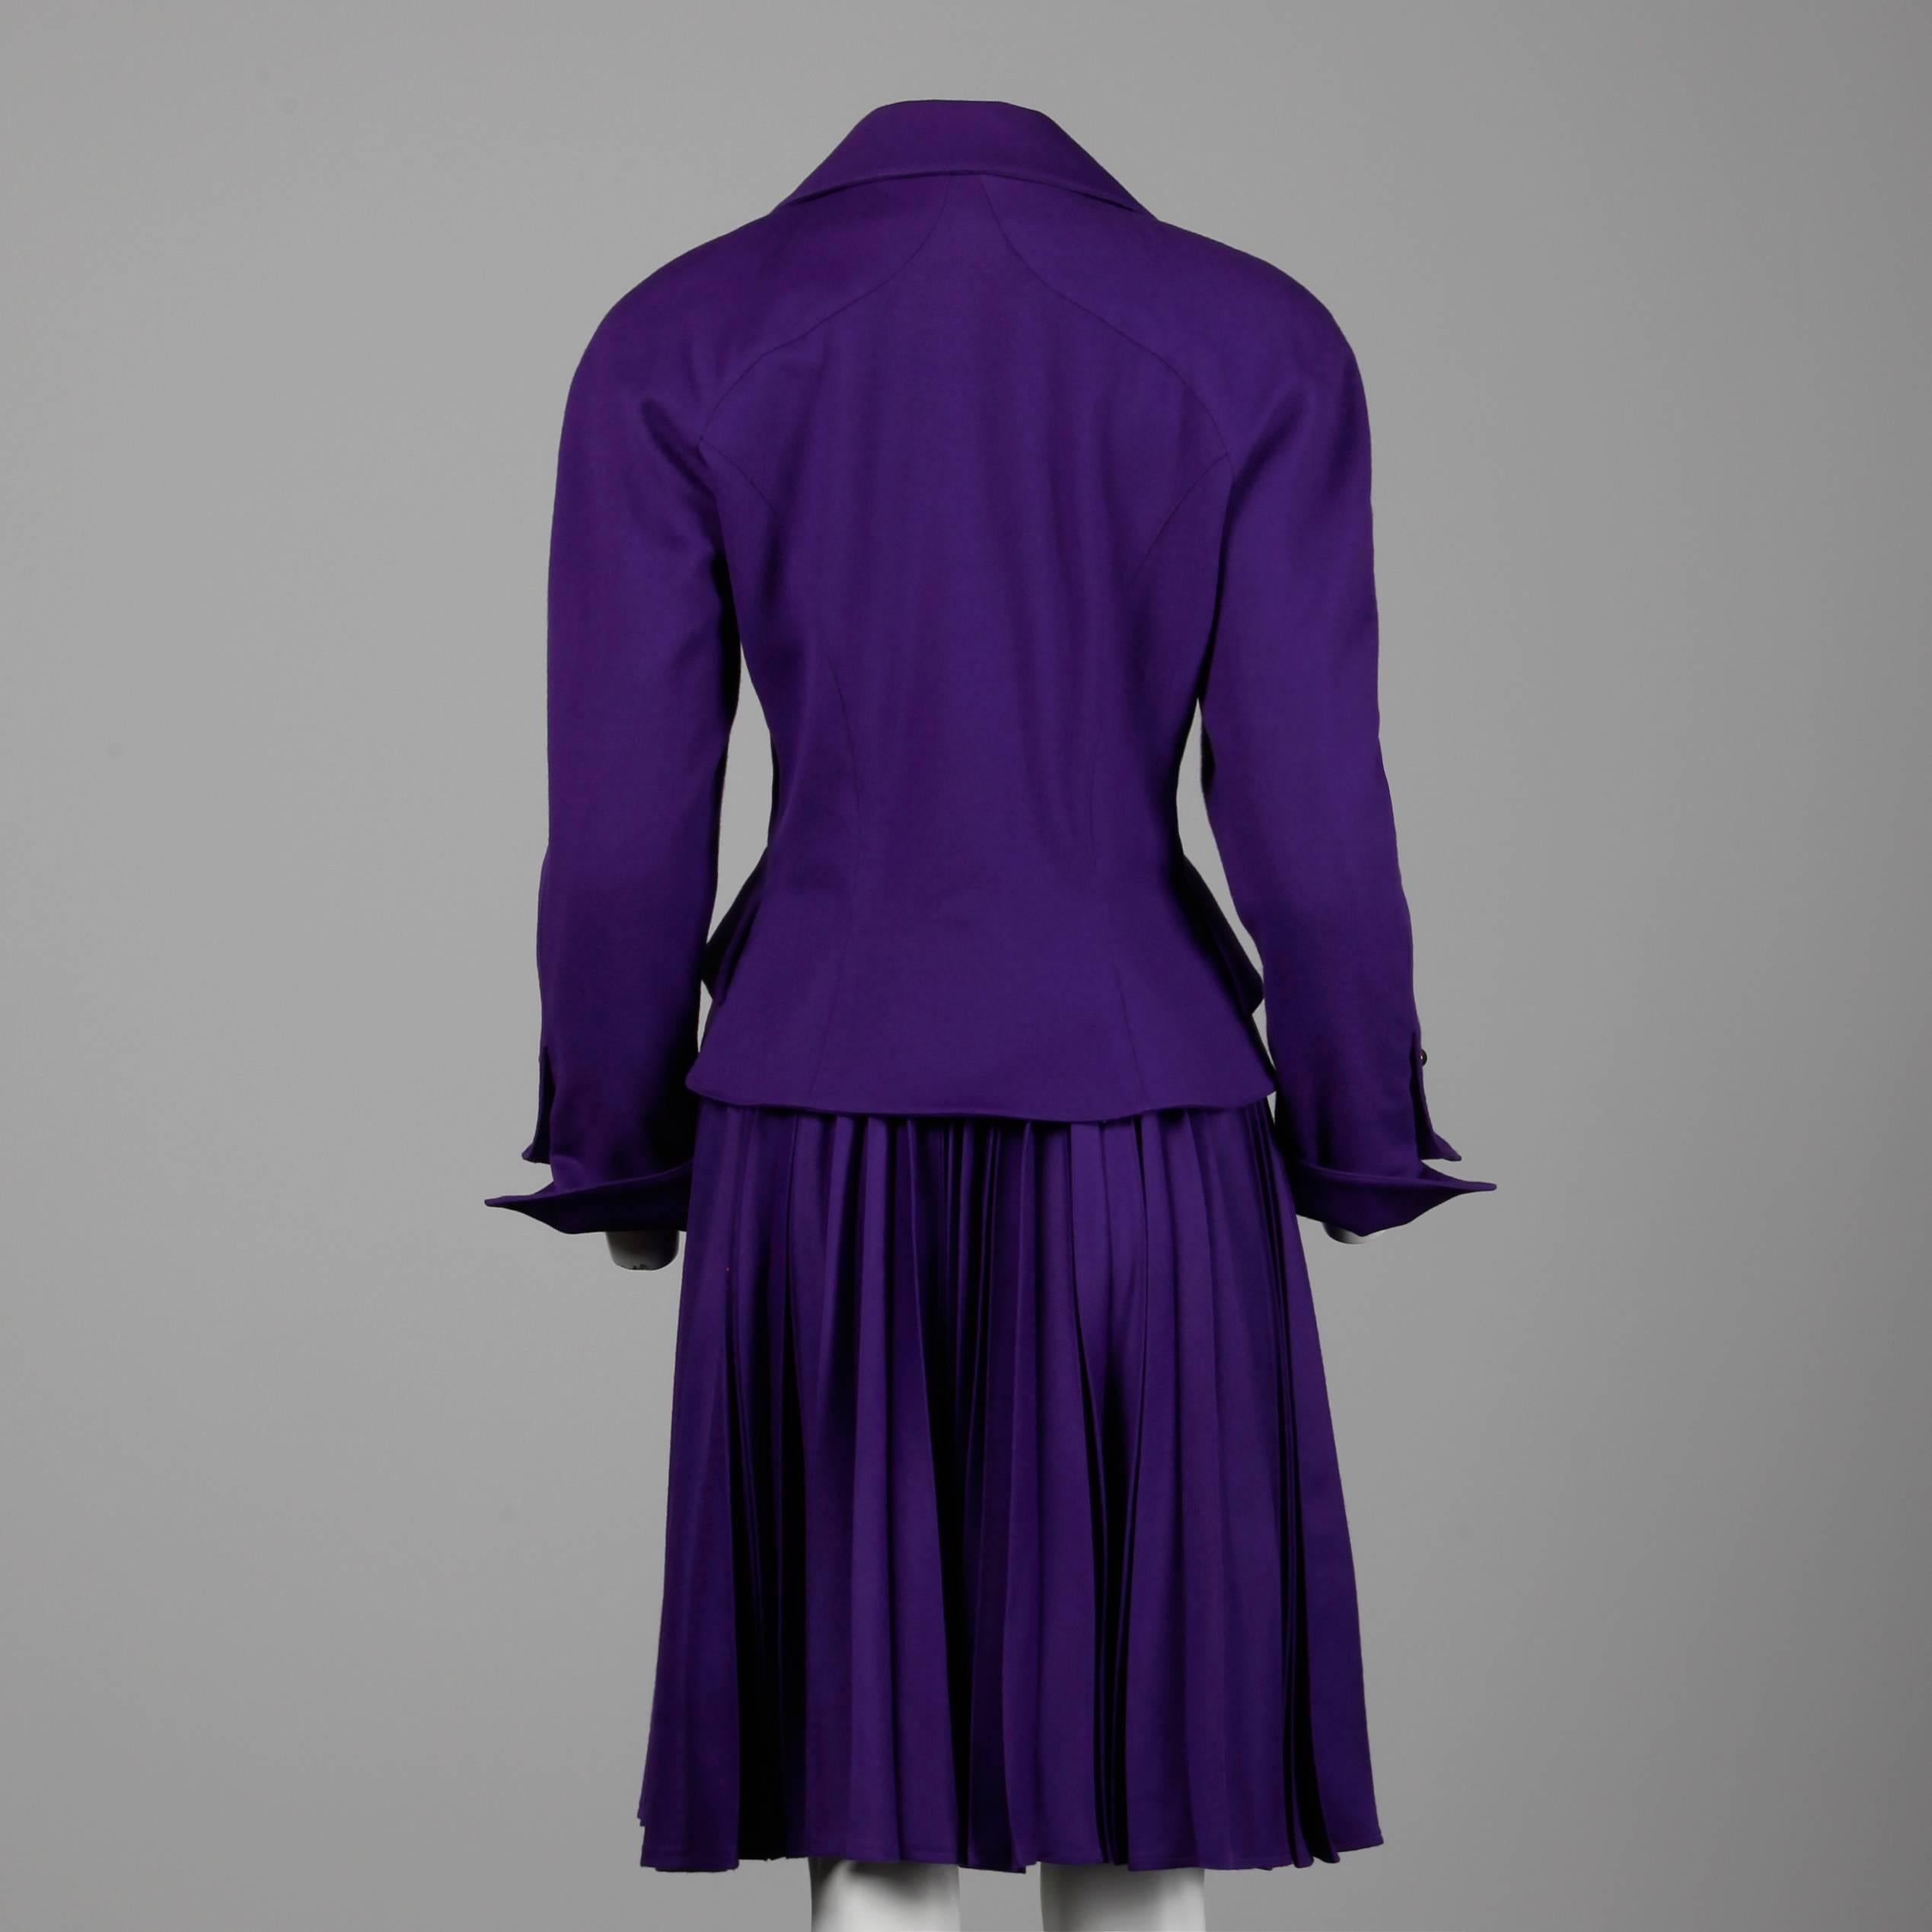 Women's 1990s Christian Lacroix Vintage Pret-a-Porter Wool Jacket + Skirt Suit Ensemble